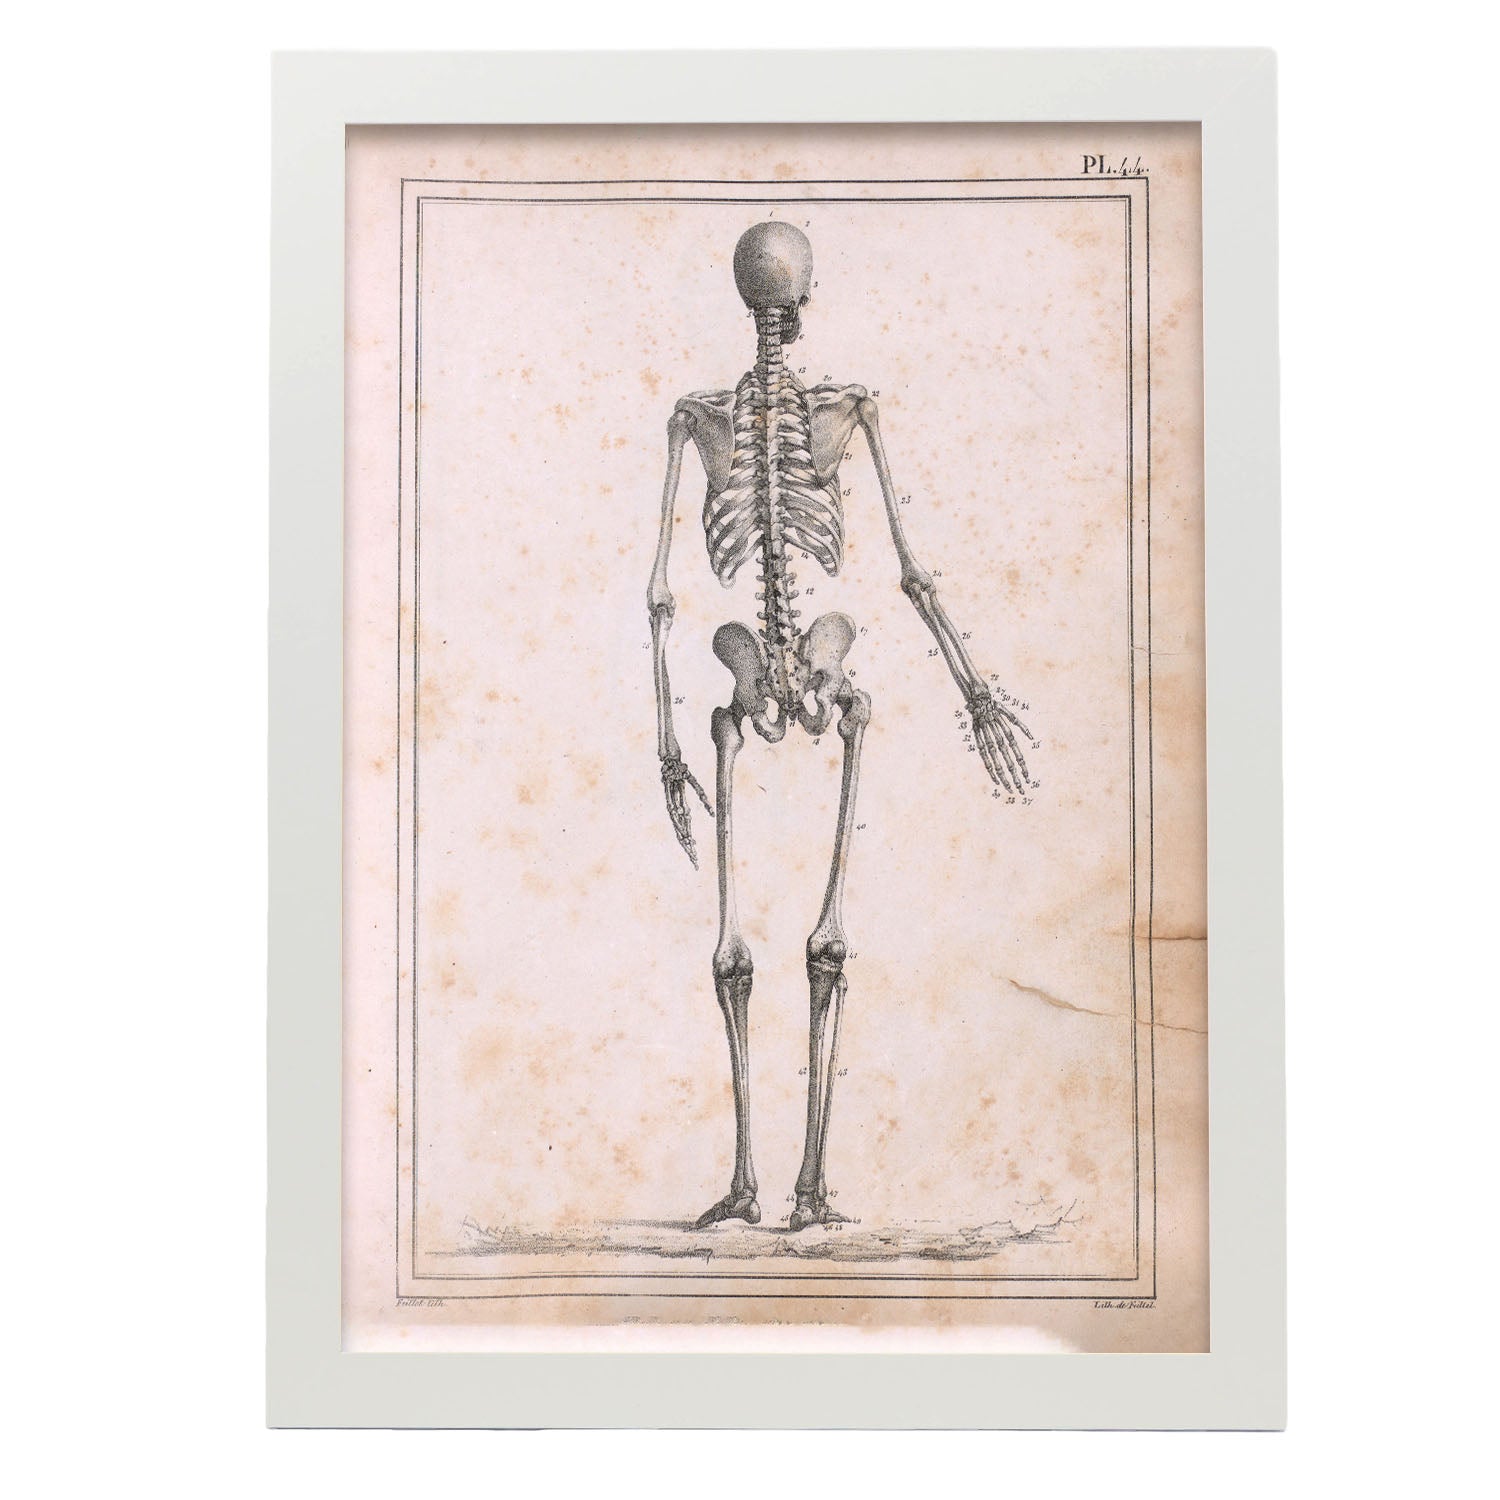 Paillou Skeleton-Artwork-Nacnic-A3-Marco Blanco-Nacnic Estudio SL